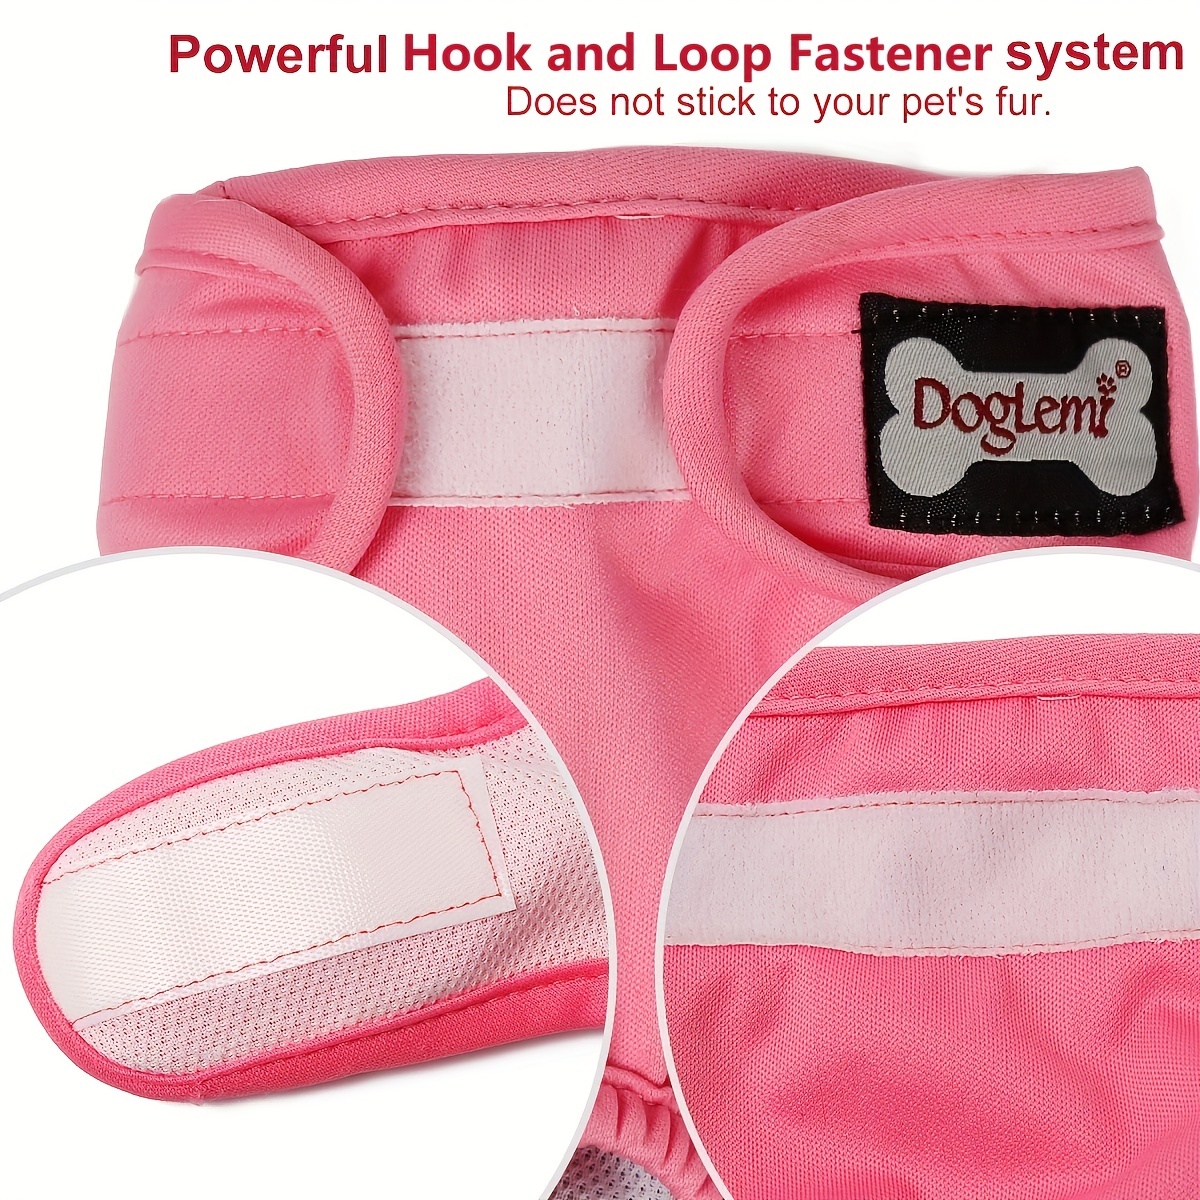 Comprar Pantalones fisiológicos lavables para perros, bragas de prevención  de estro para perros, pantalones de seguridad menstruales, bragas  sanitarias para mascotas, cinturón cortés